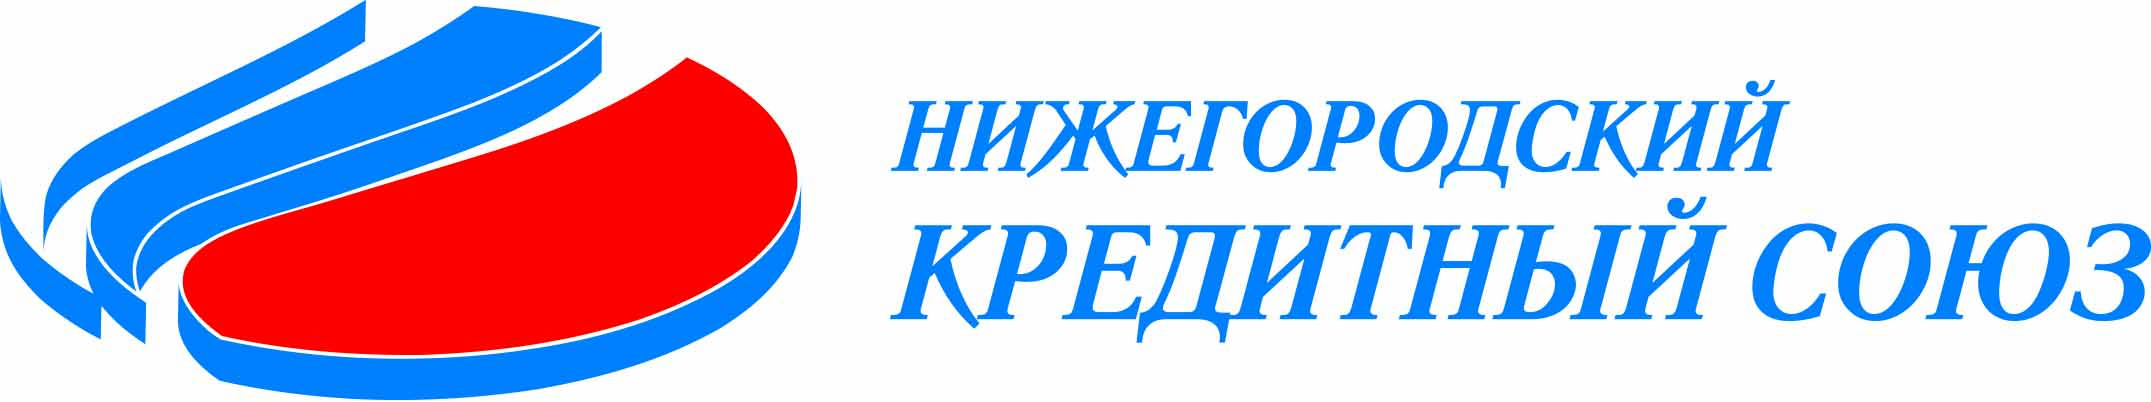 Логотип НКС кривые.cdr